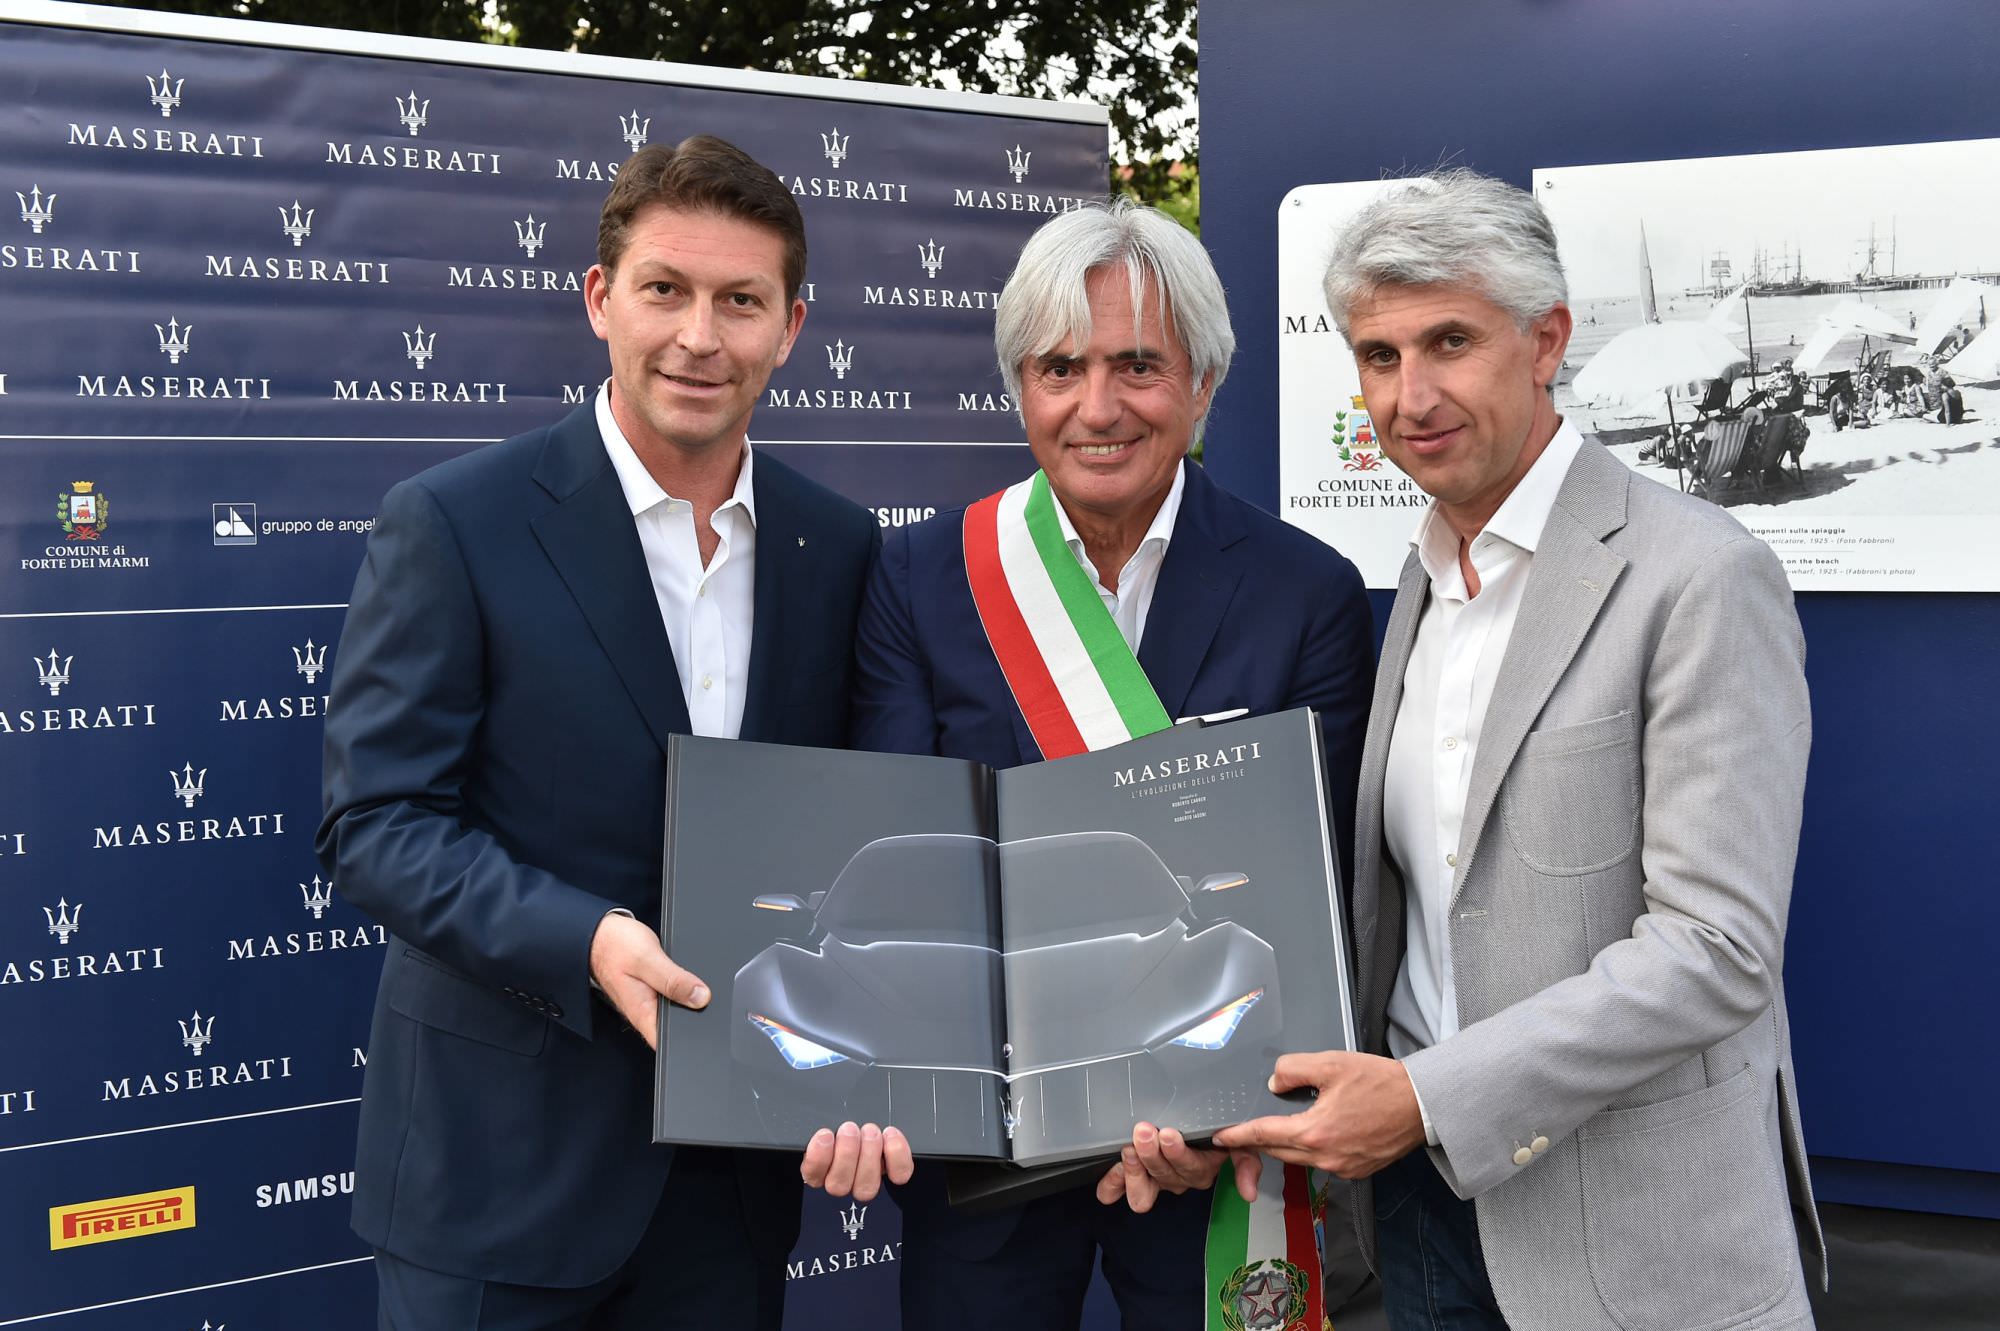 “Il contratto di sponsorizzazione con Maserati è stato più fruttuoso per Forte dei Marmi “